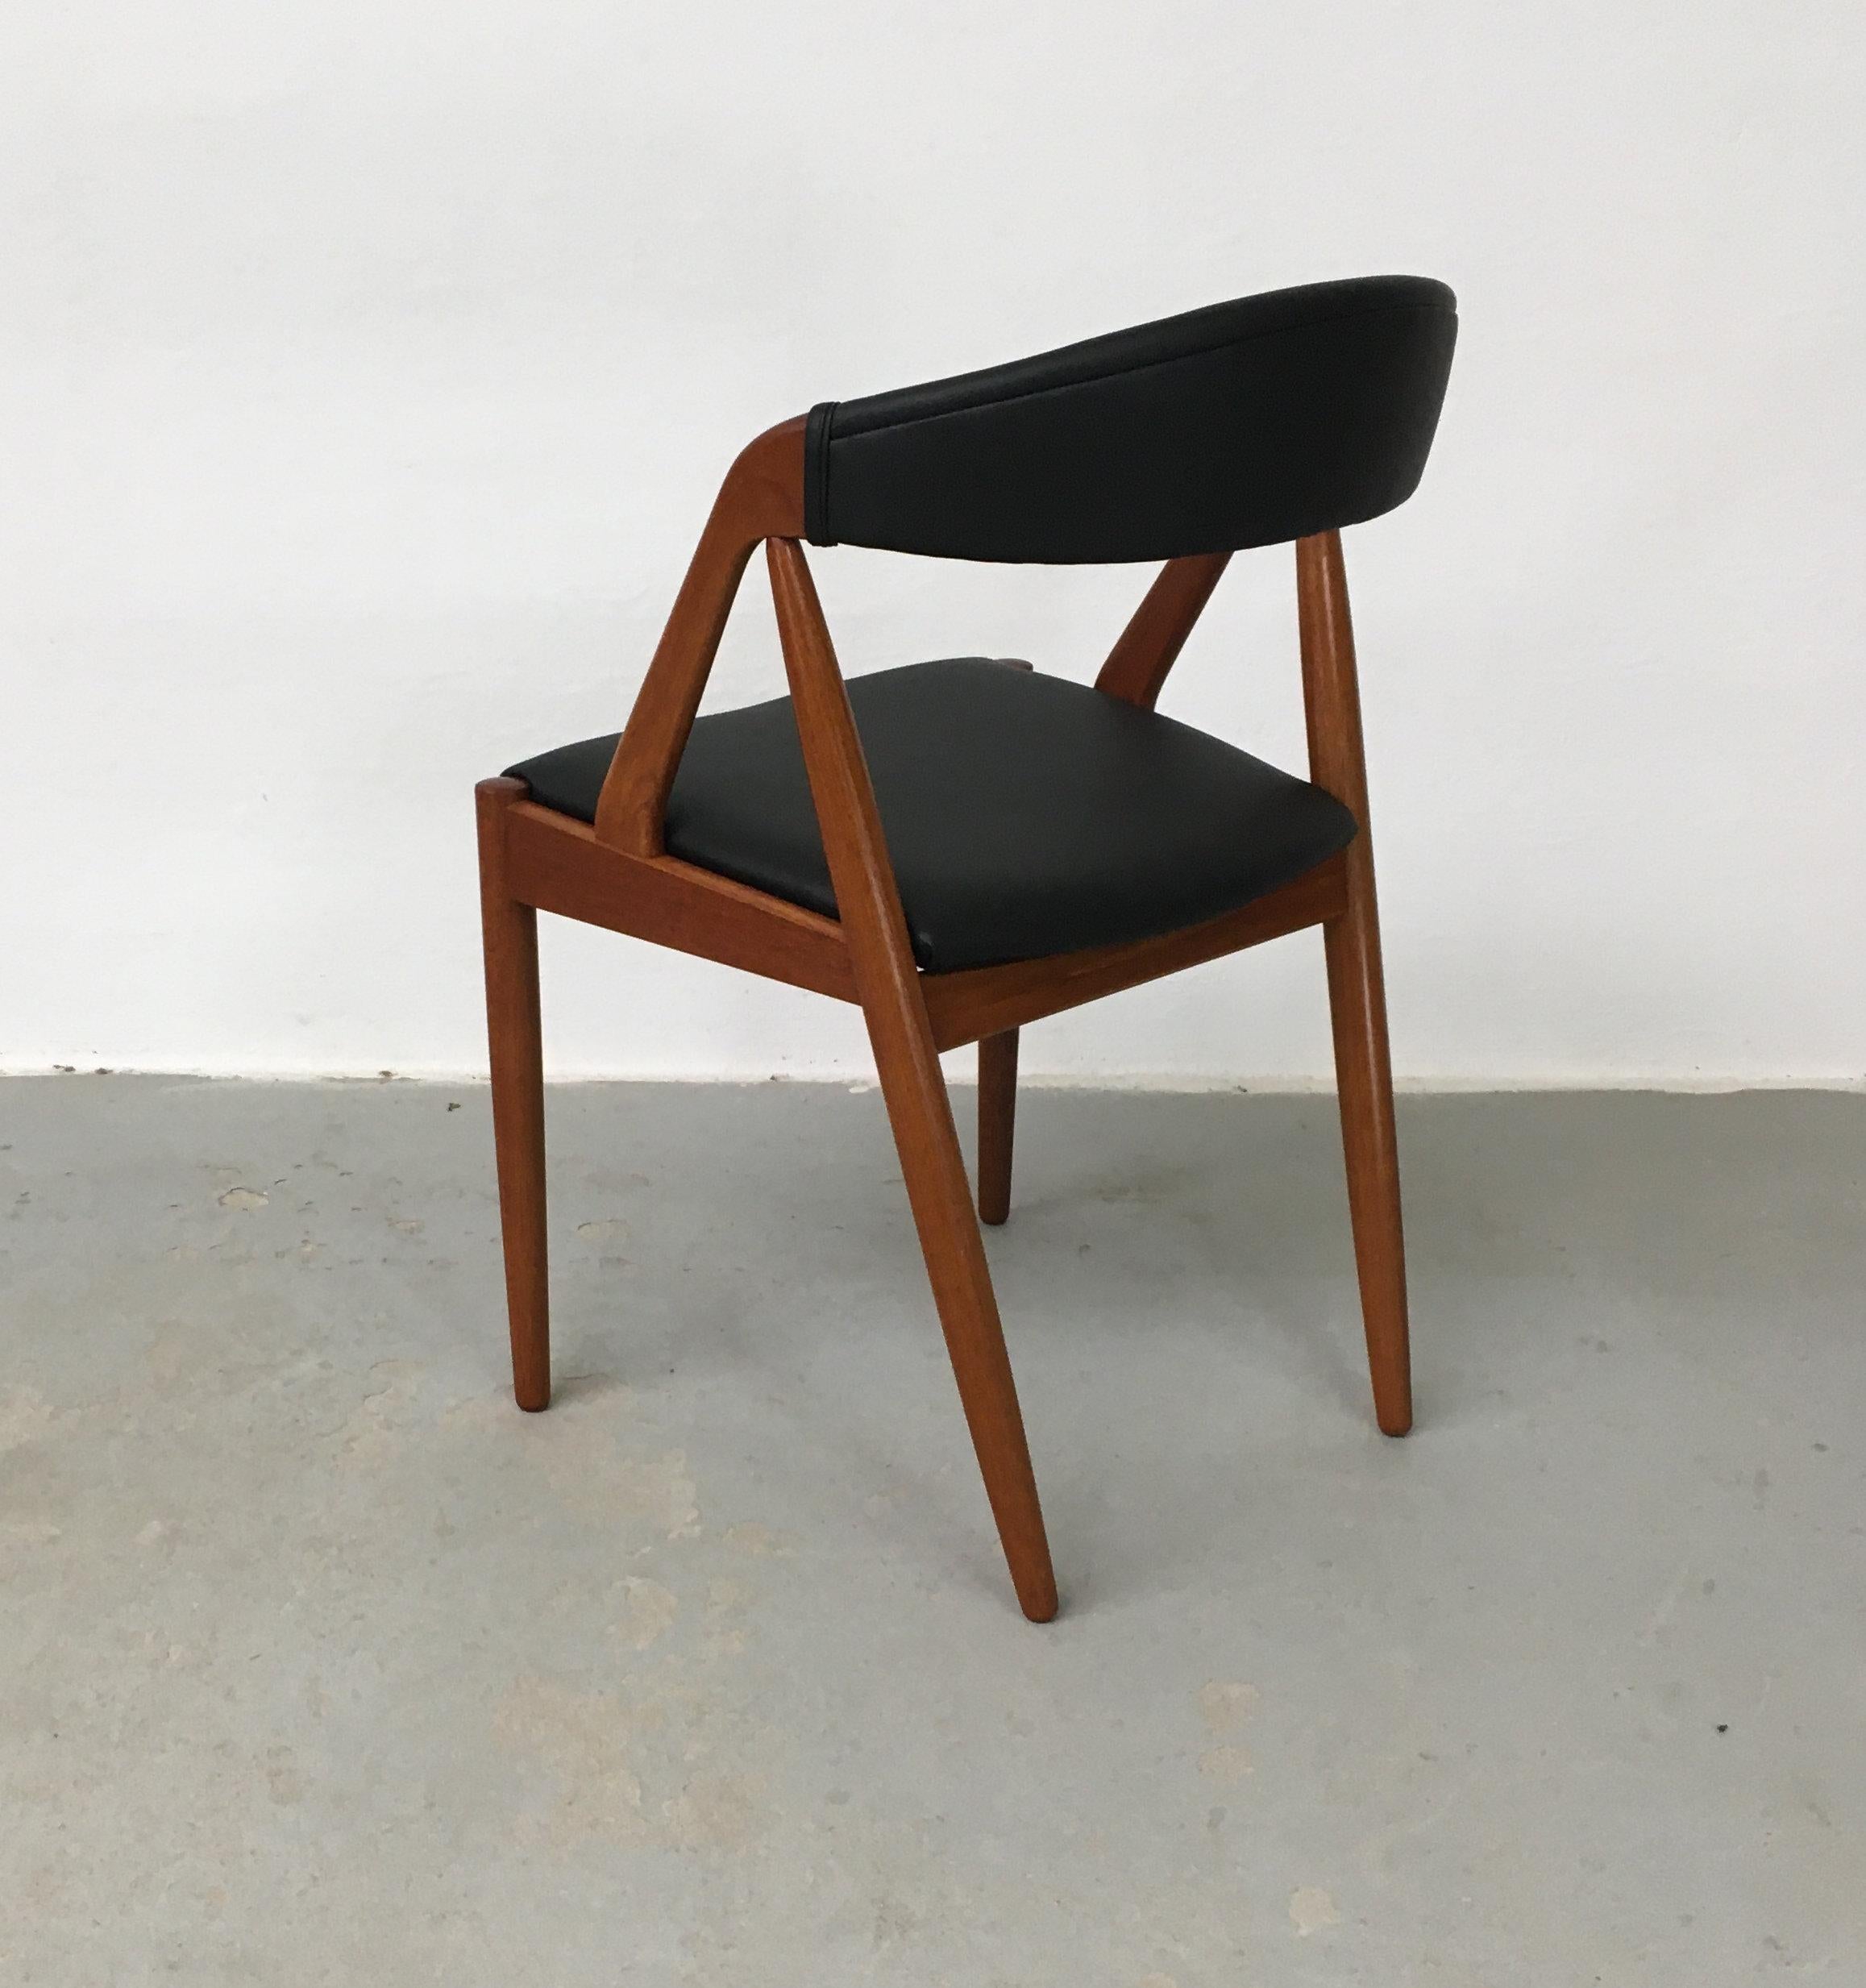 Teck Huit chaises de salle à manger Kai Kristiansen restaurées, retapissées sur mesure, incluses en vente